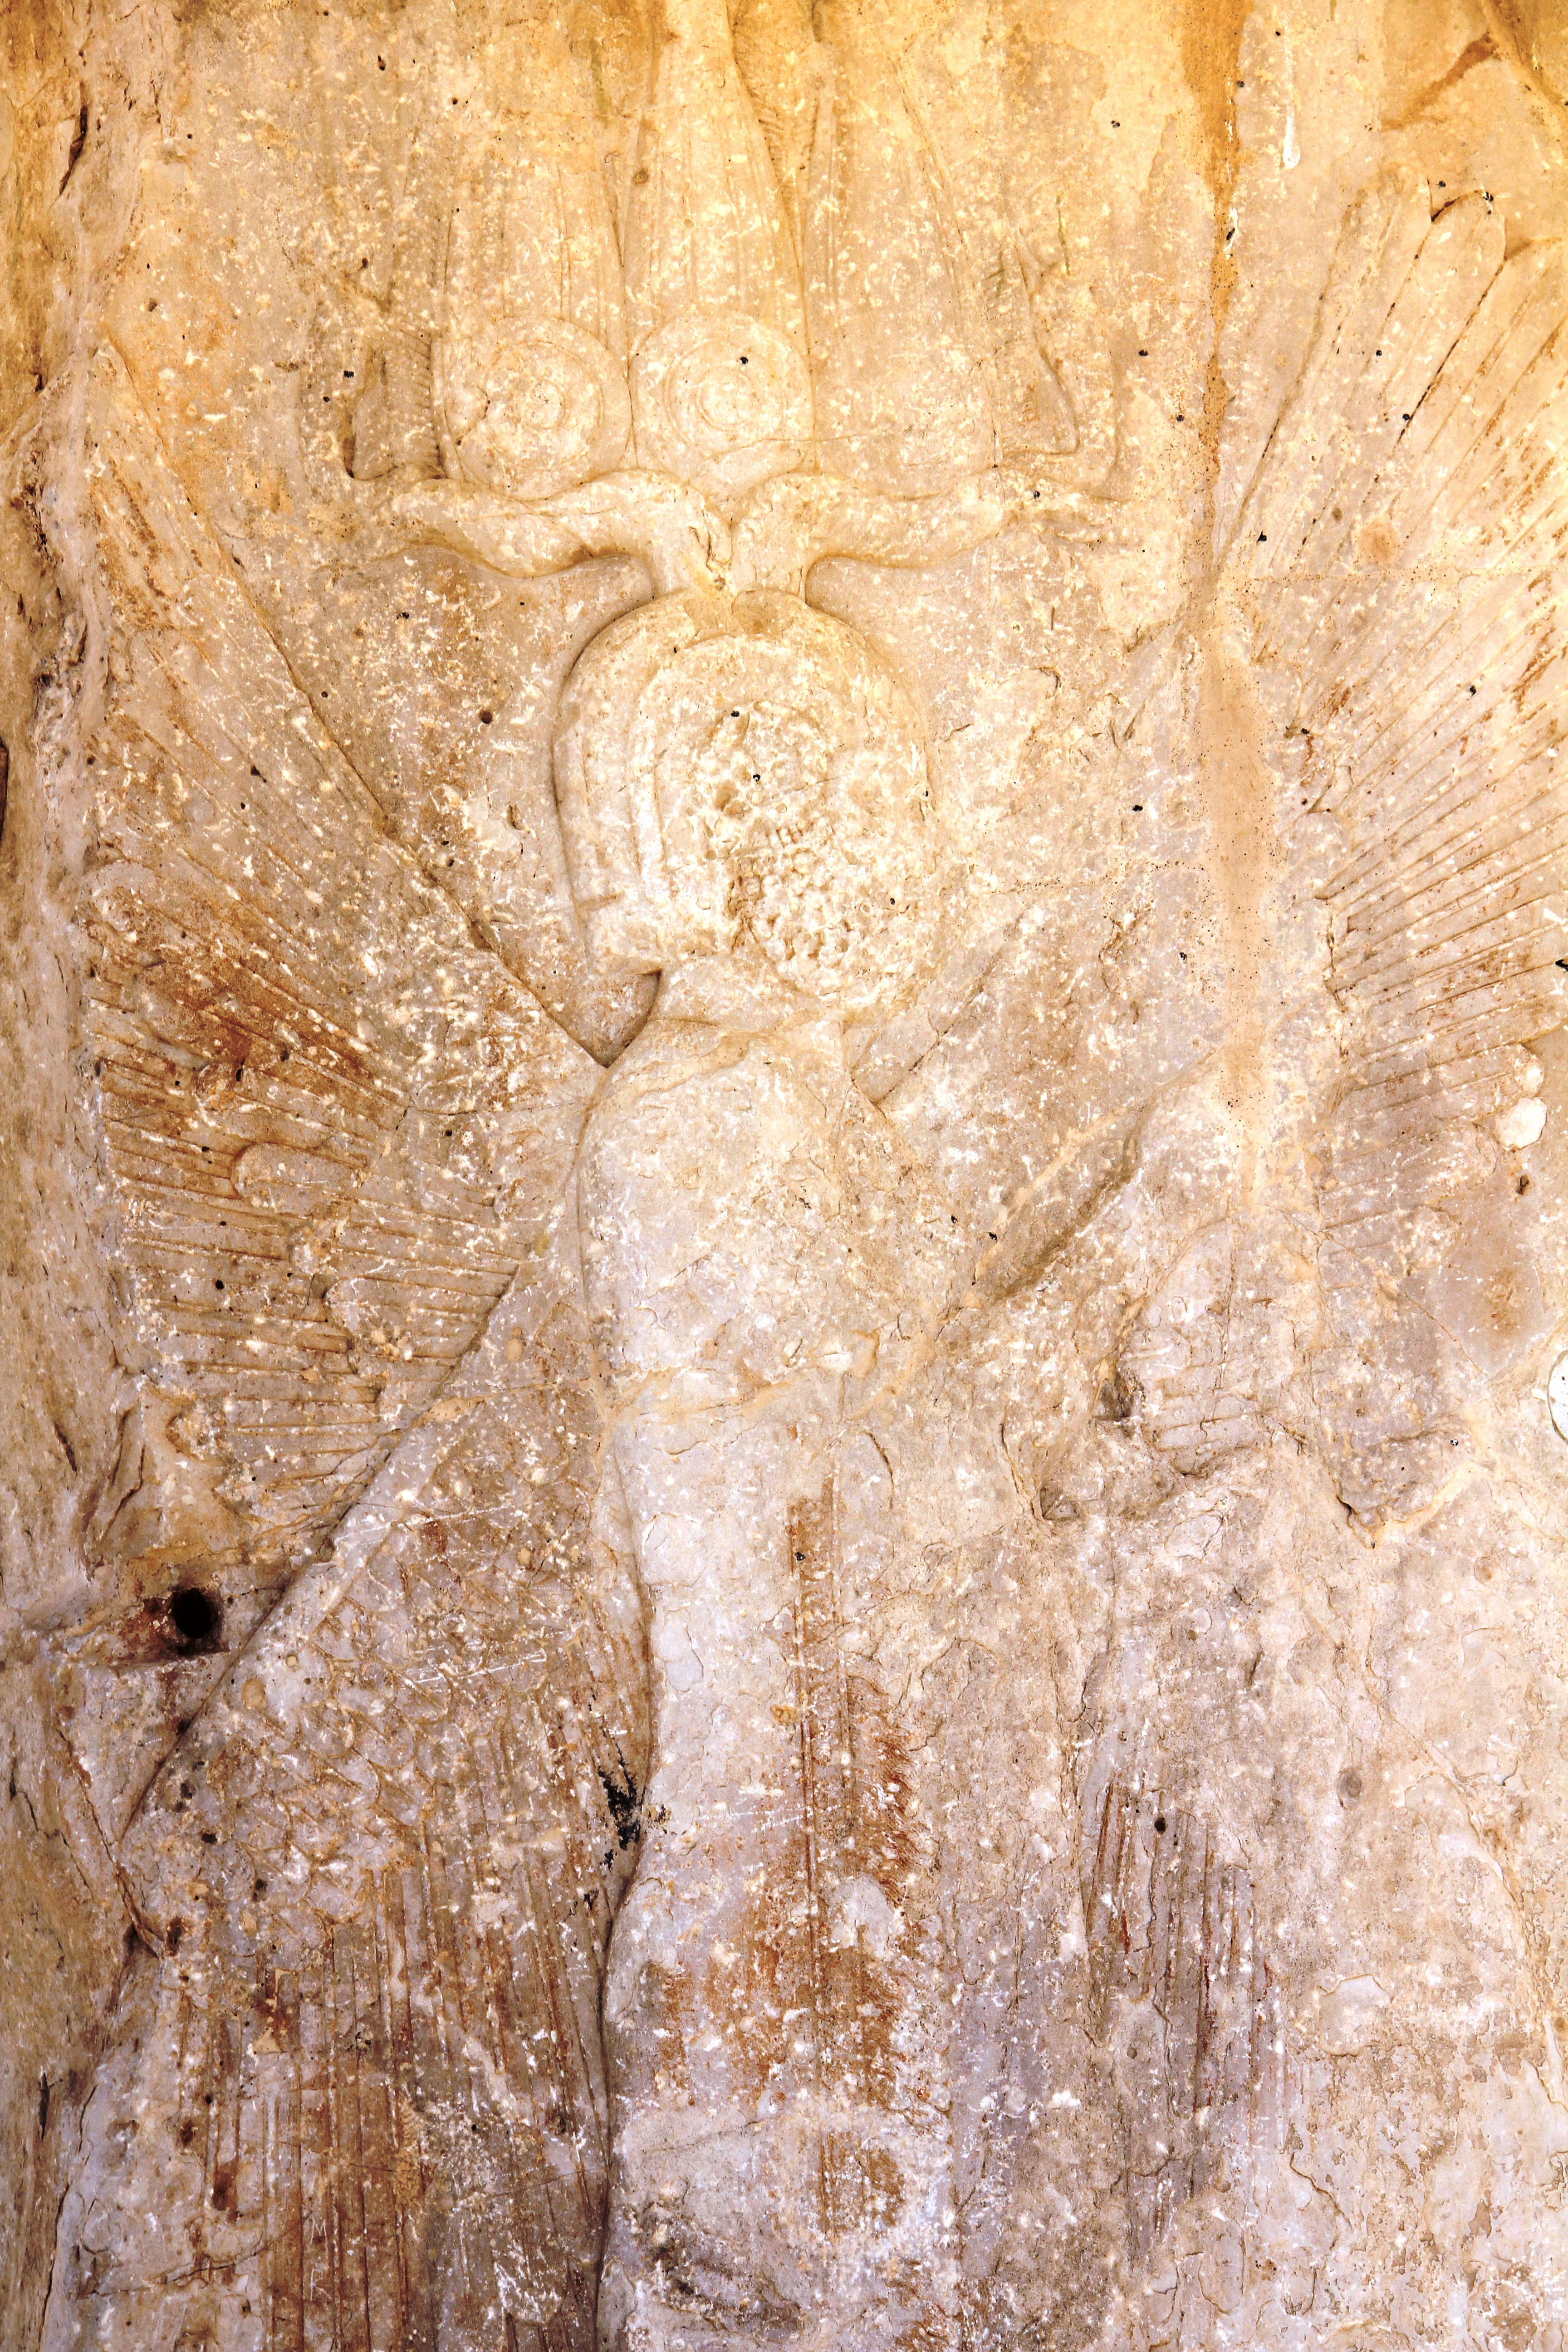  تصویر منتسب به کوروش در کاخ ورودی  پاسارگاد 